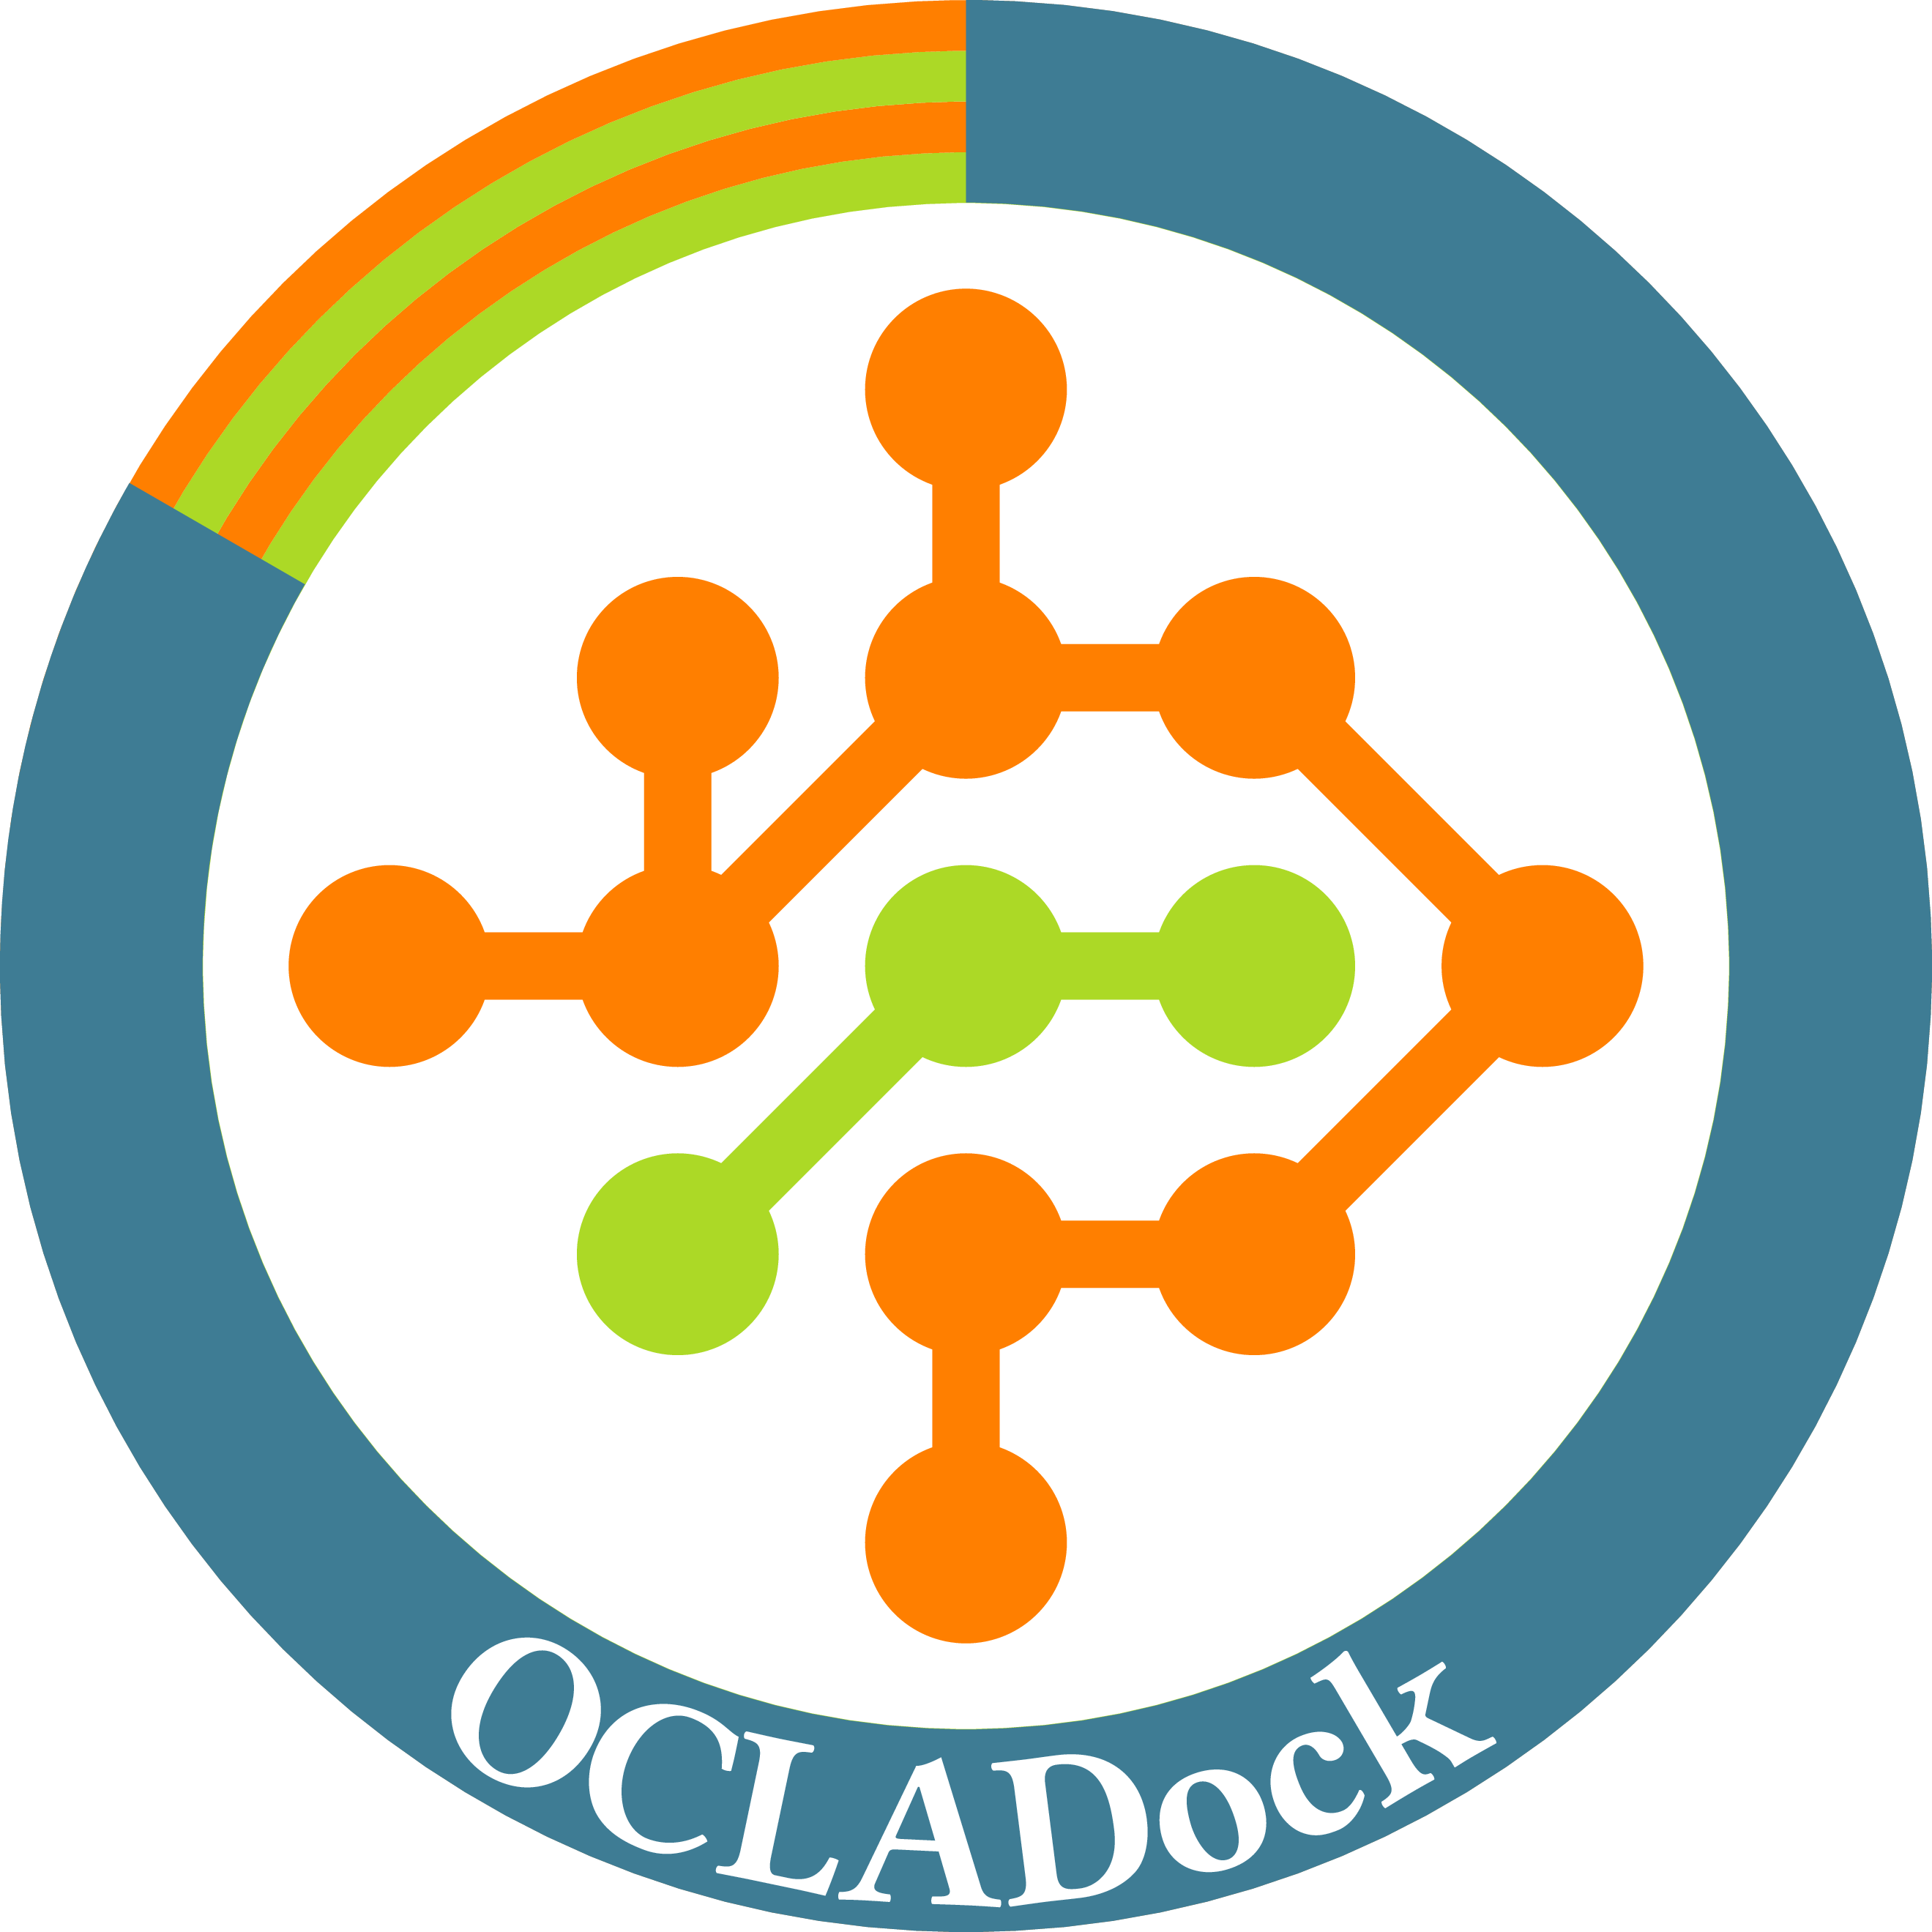 ocladock-logo